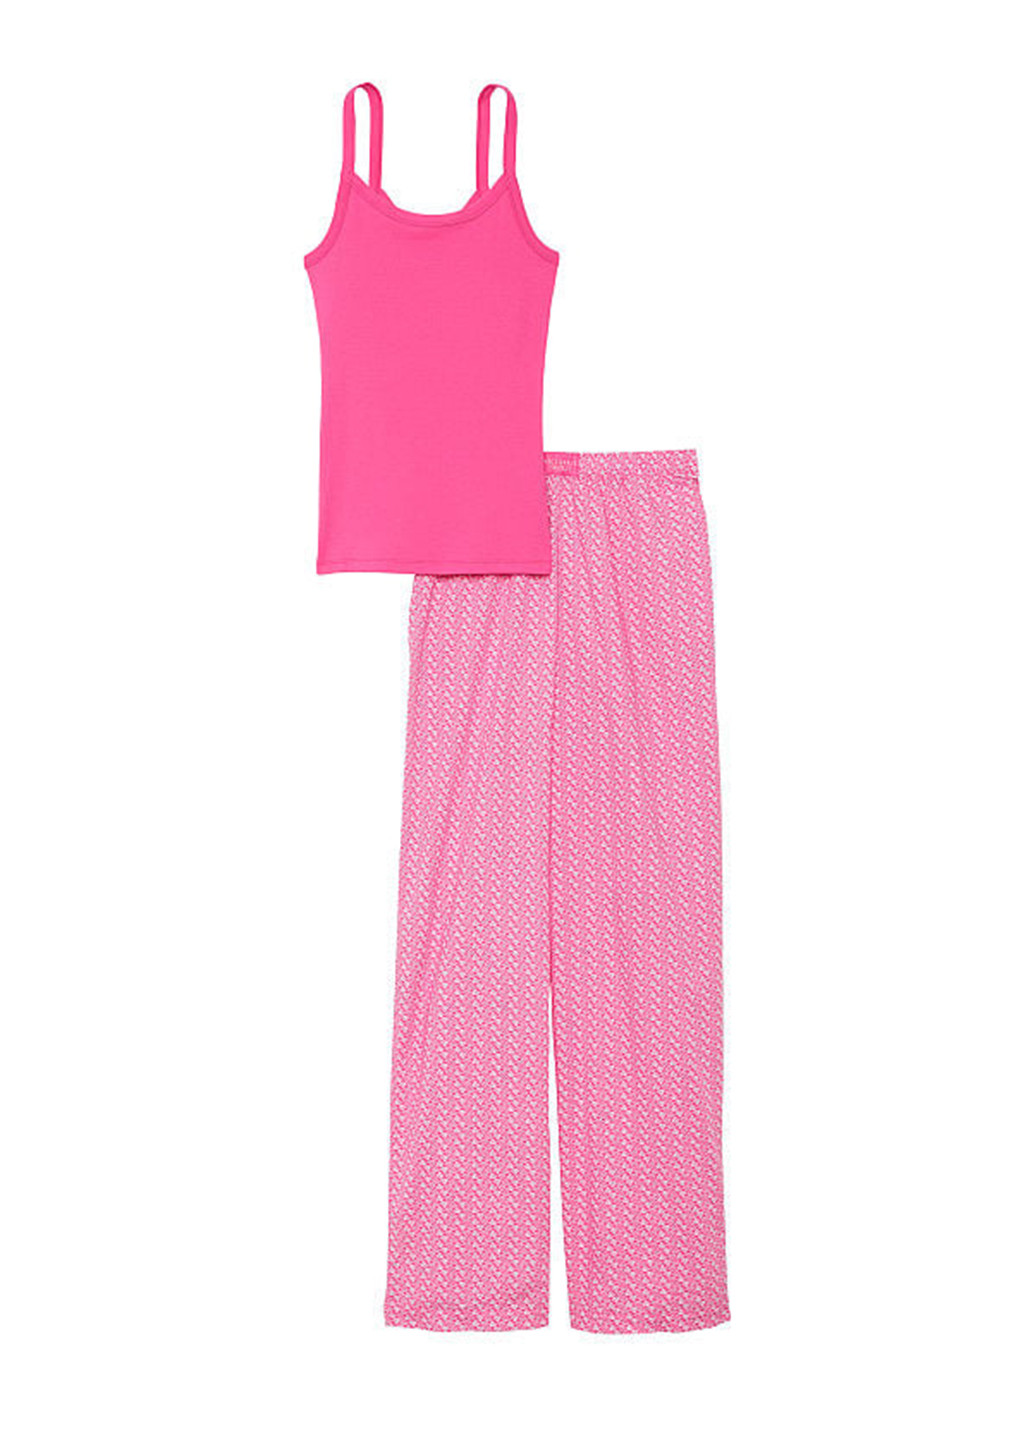 Розовая всесезон пижама (майка, брюки) майка + брюки Victoria's Secret